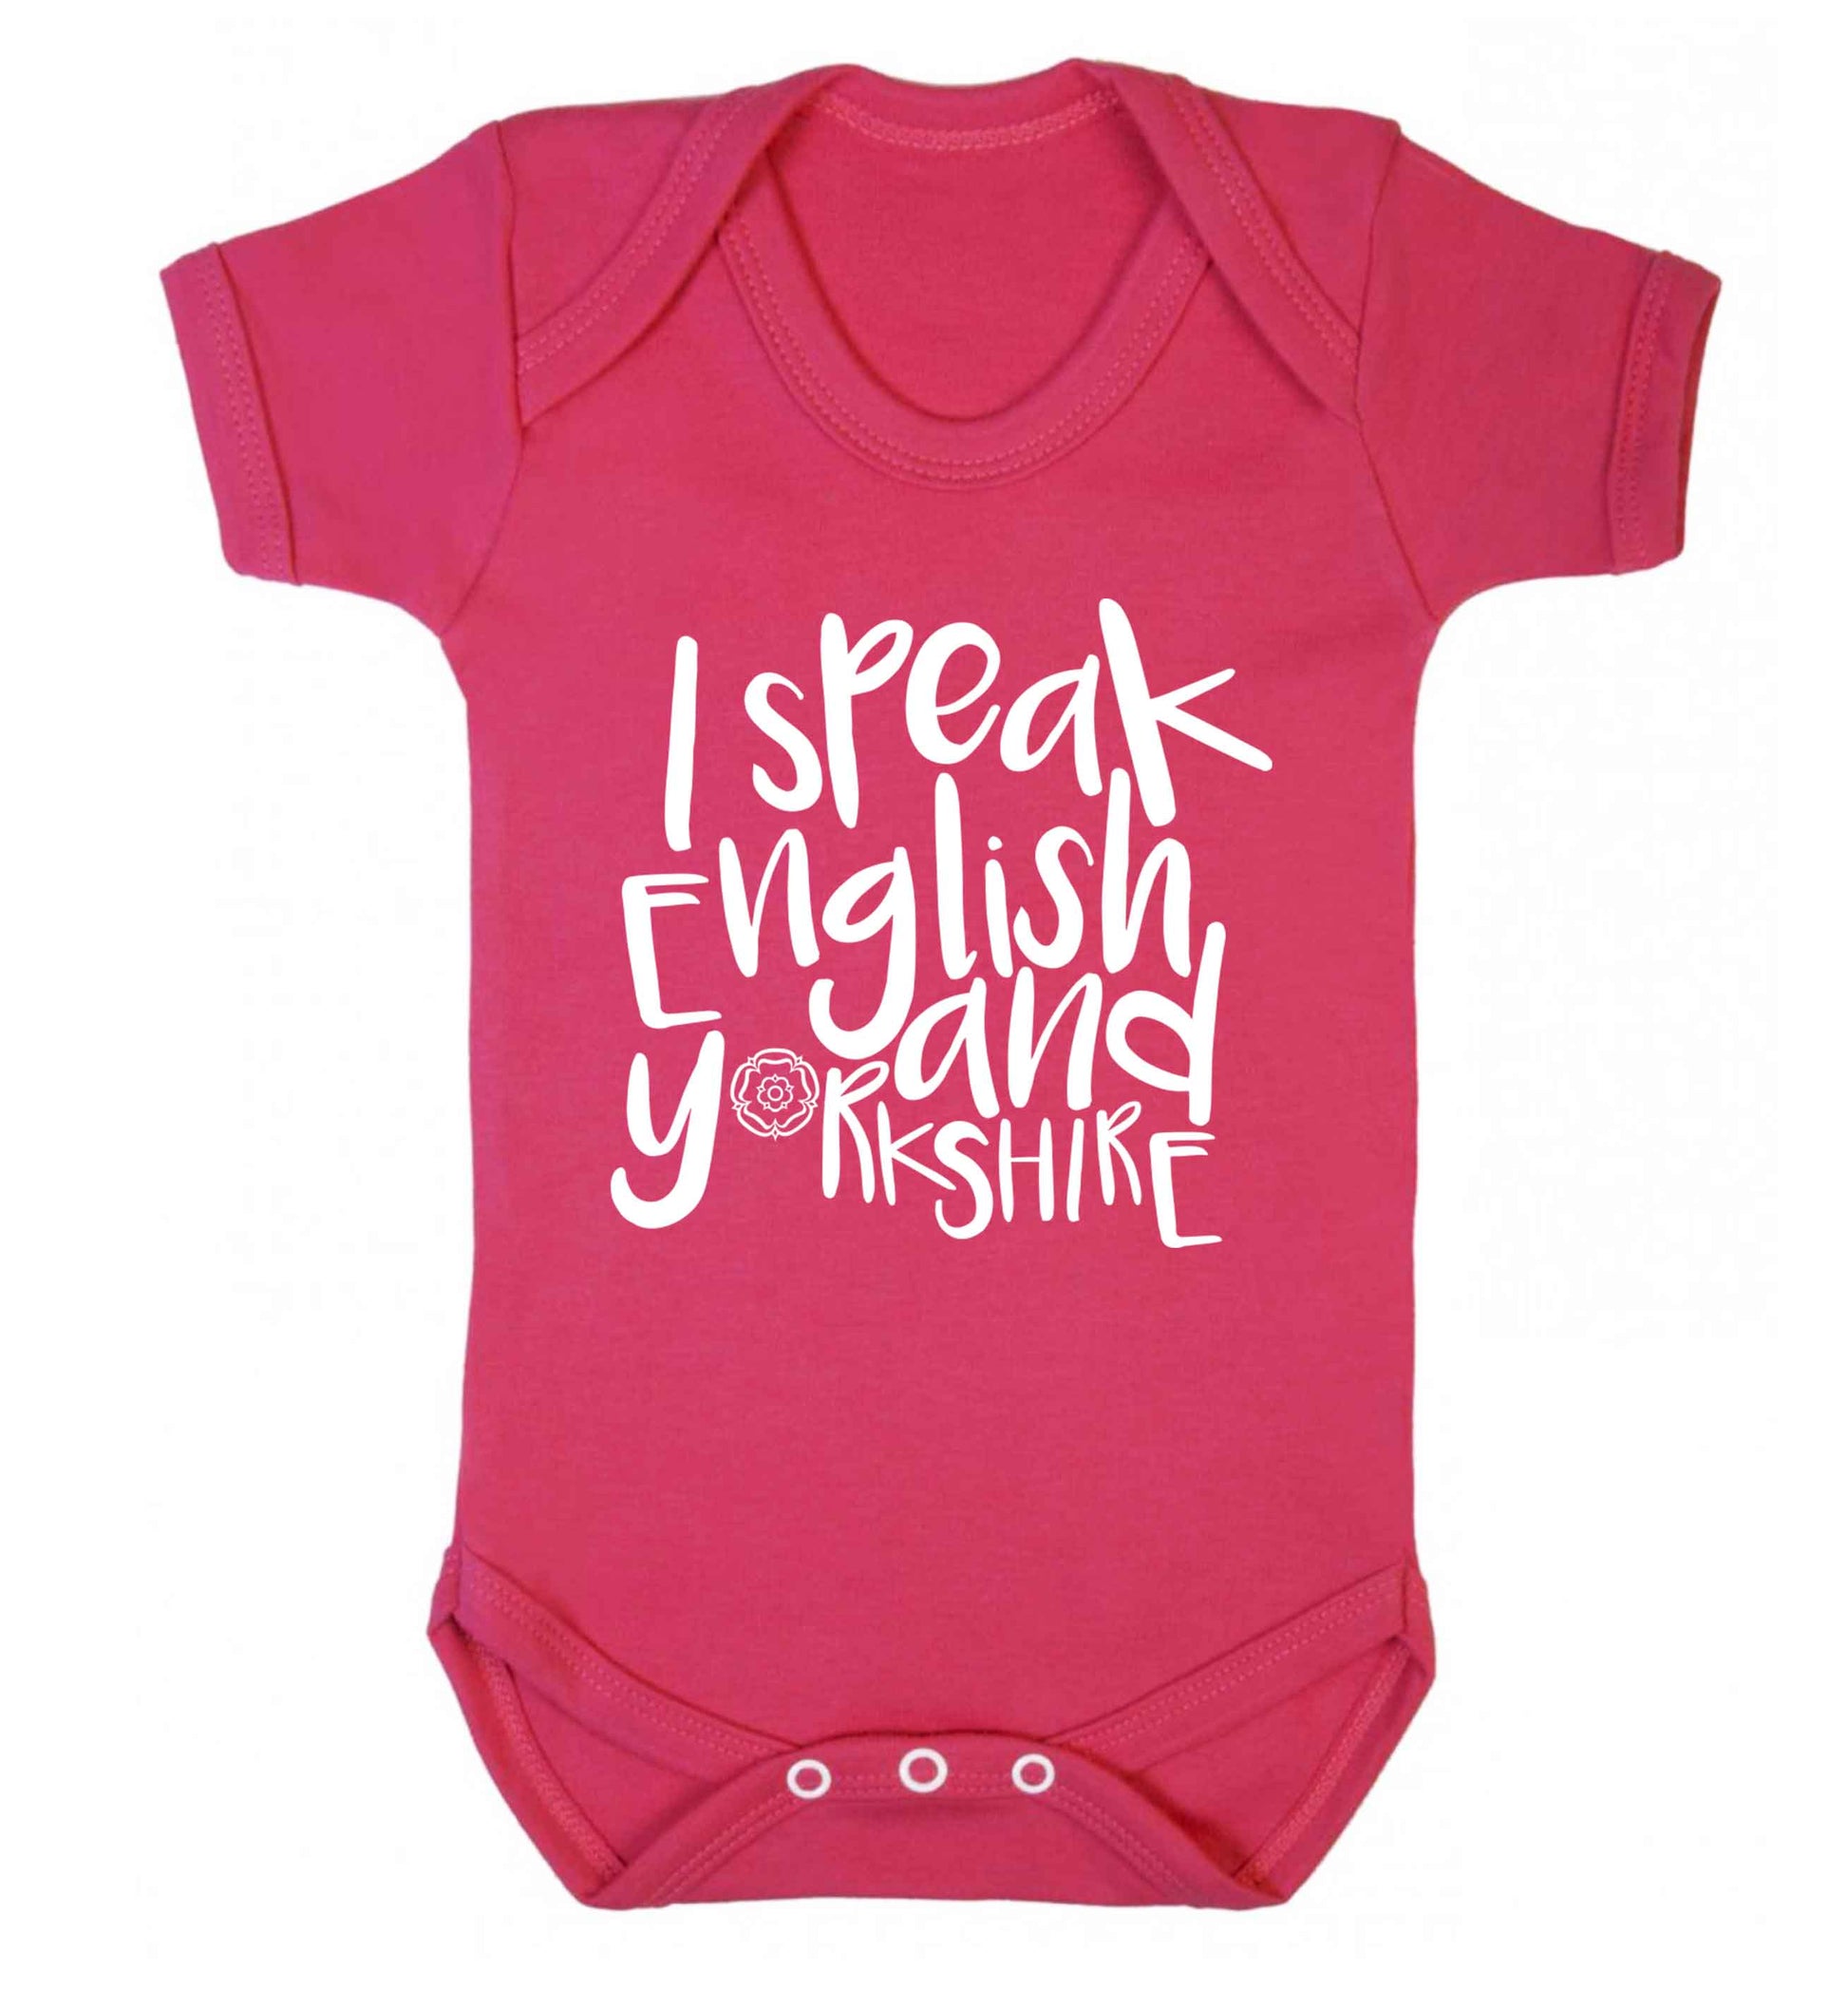 I speak English and Yorkshire Baby Vest dark pink 18-24 months